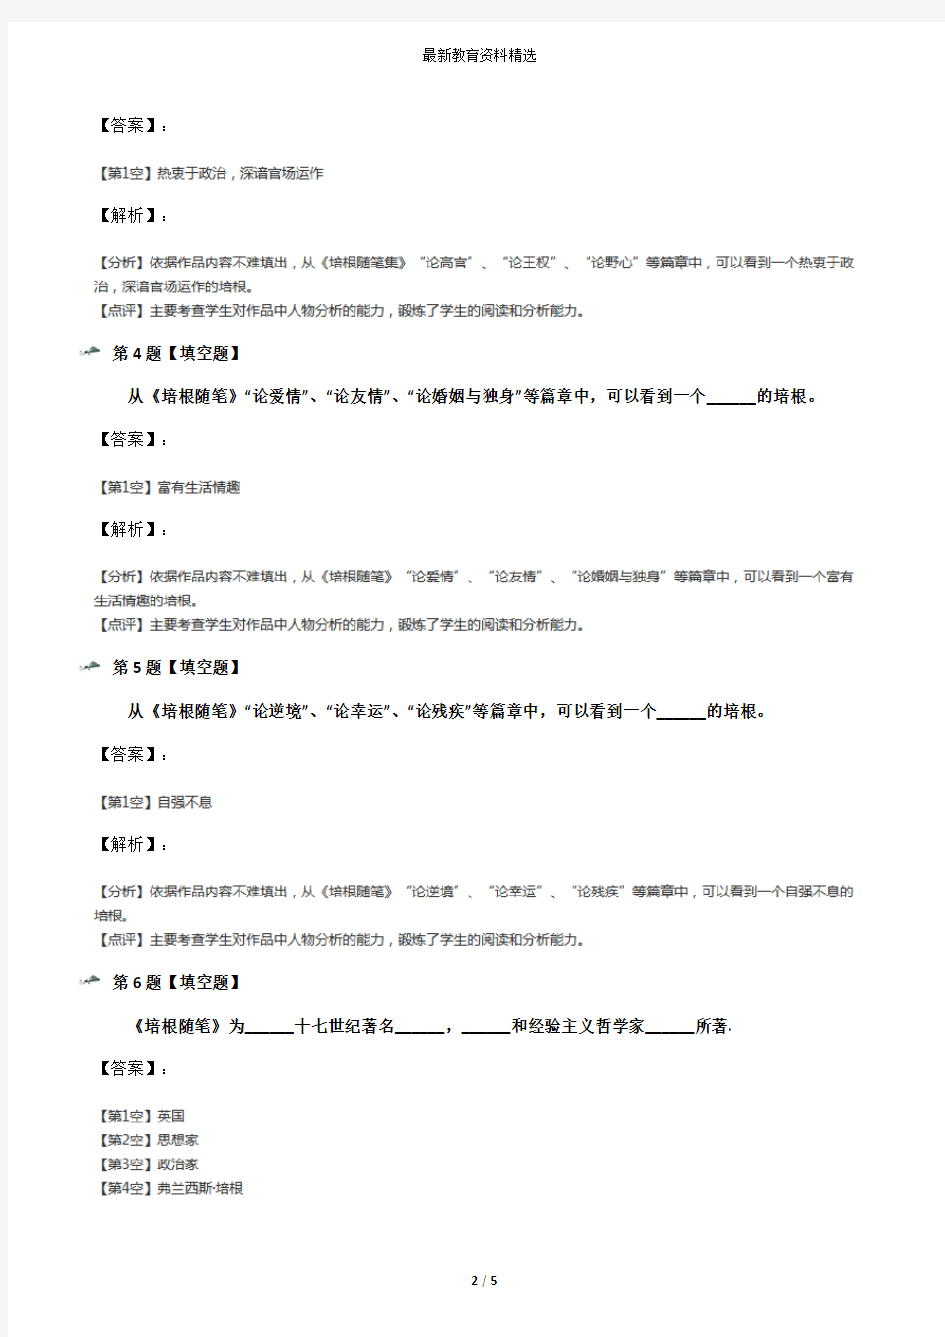 2019年精选初中语文九年级上册《培根随笔》人教版习题精选[含答案解析]第三十六篇